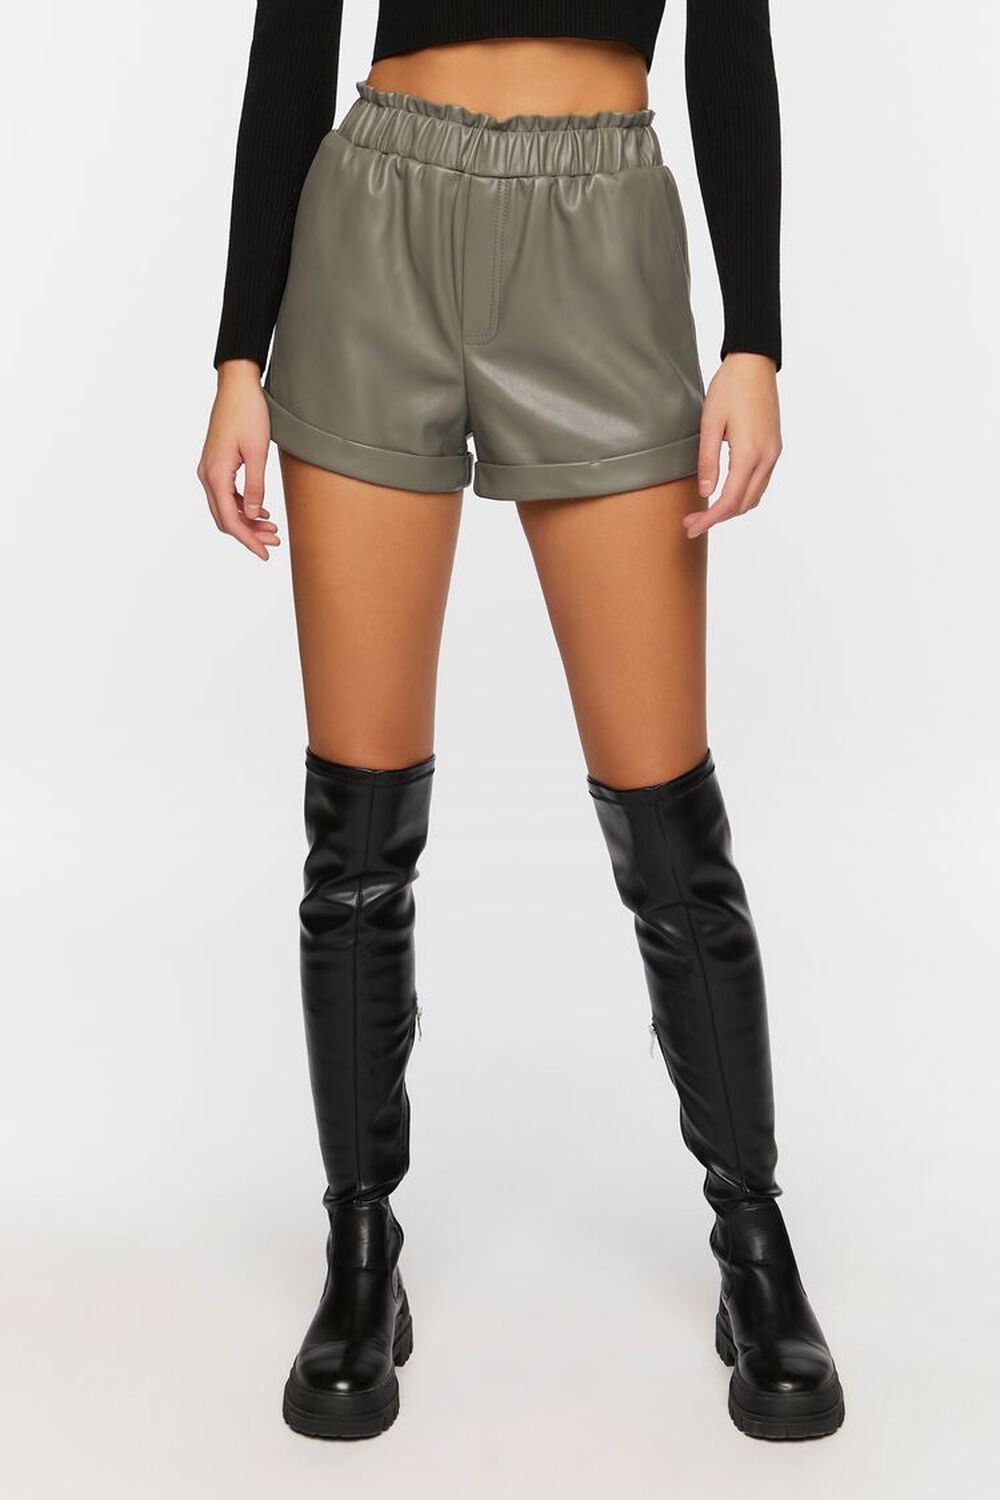 NINE IRON Faux Leather High-Waist Shorts, image 2